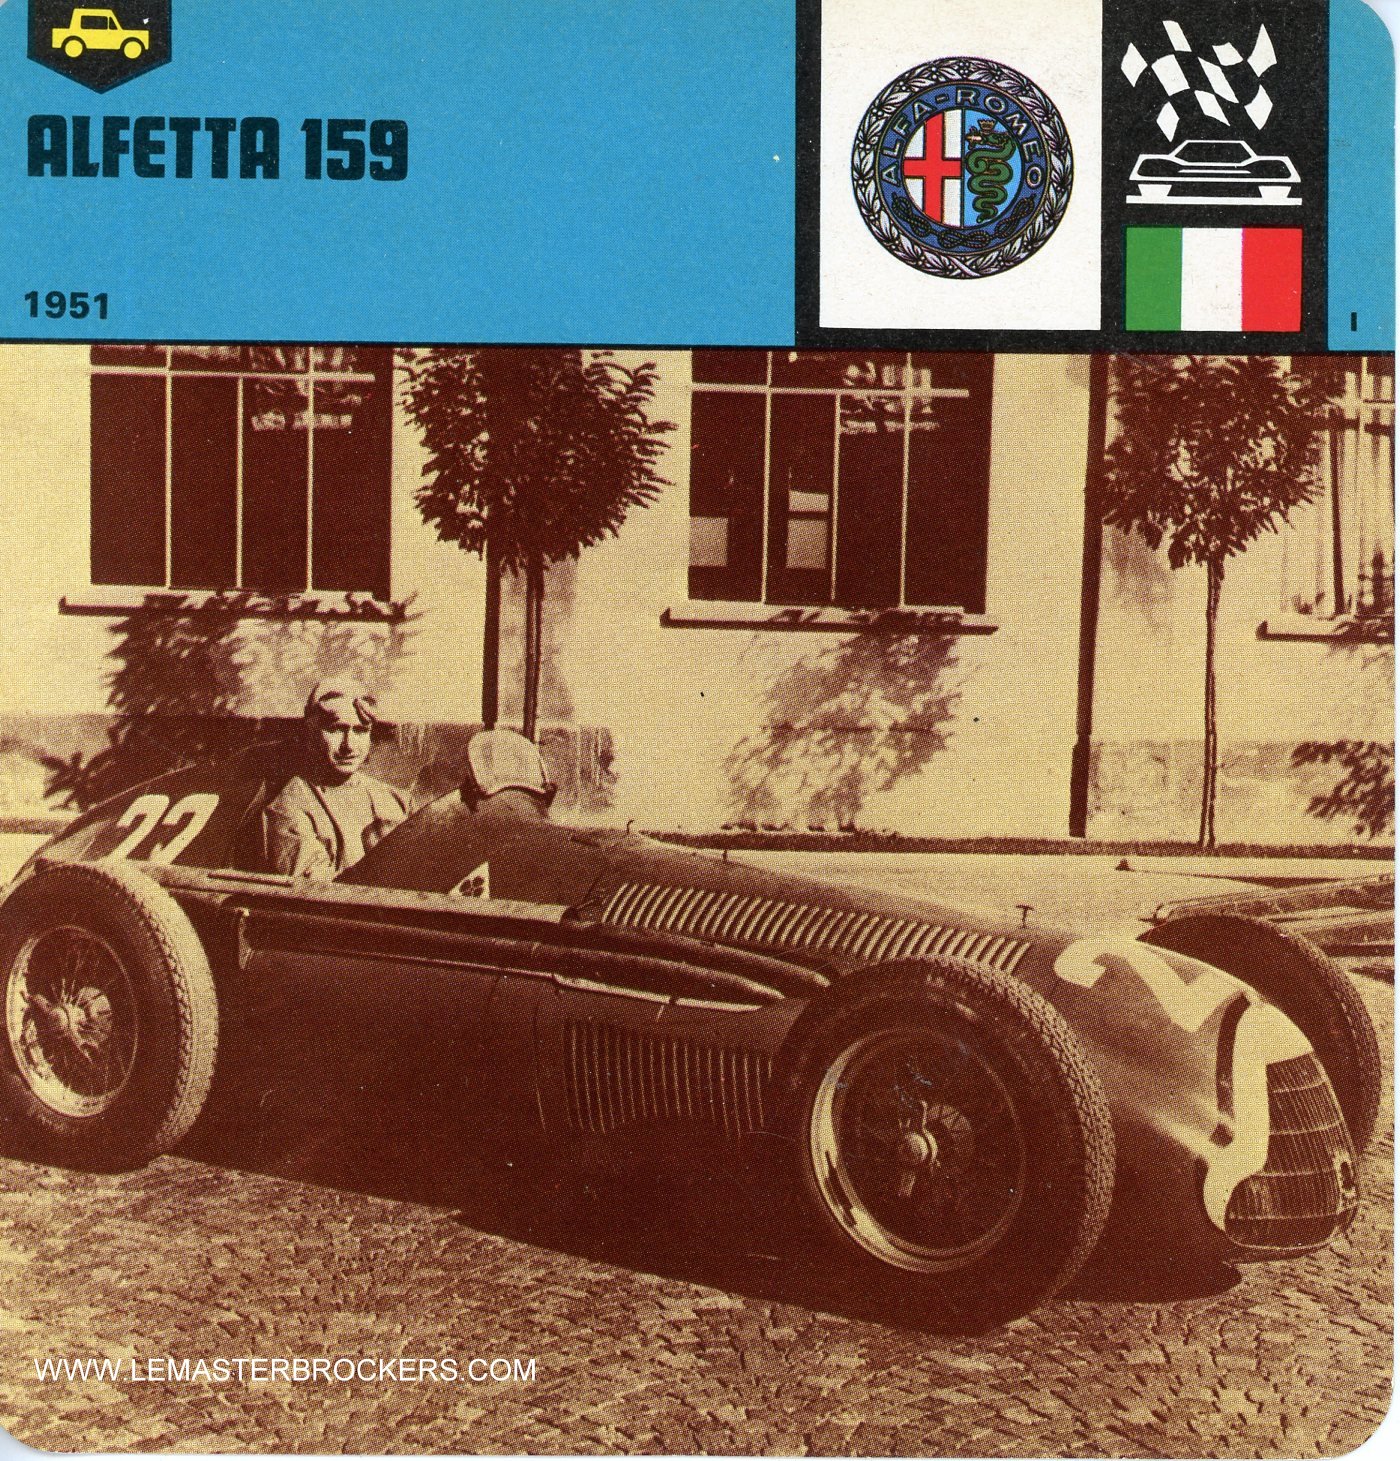 FICHE AUTO ALFETTA 159 - 1951